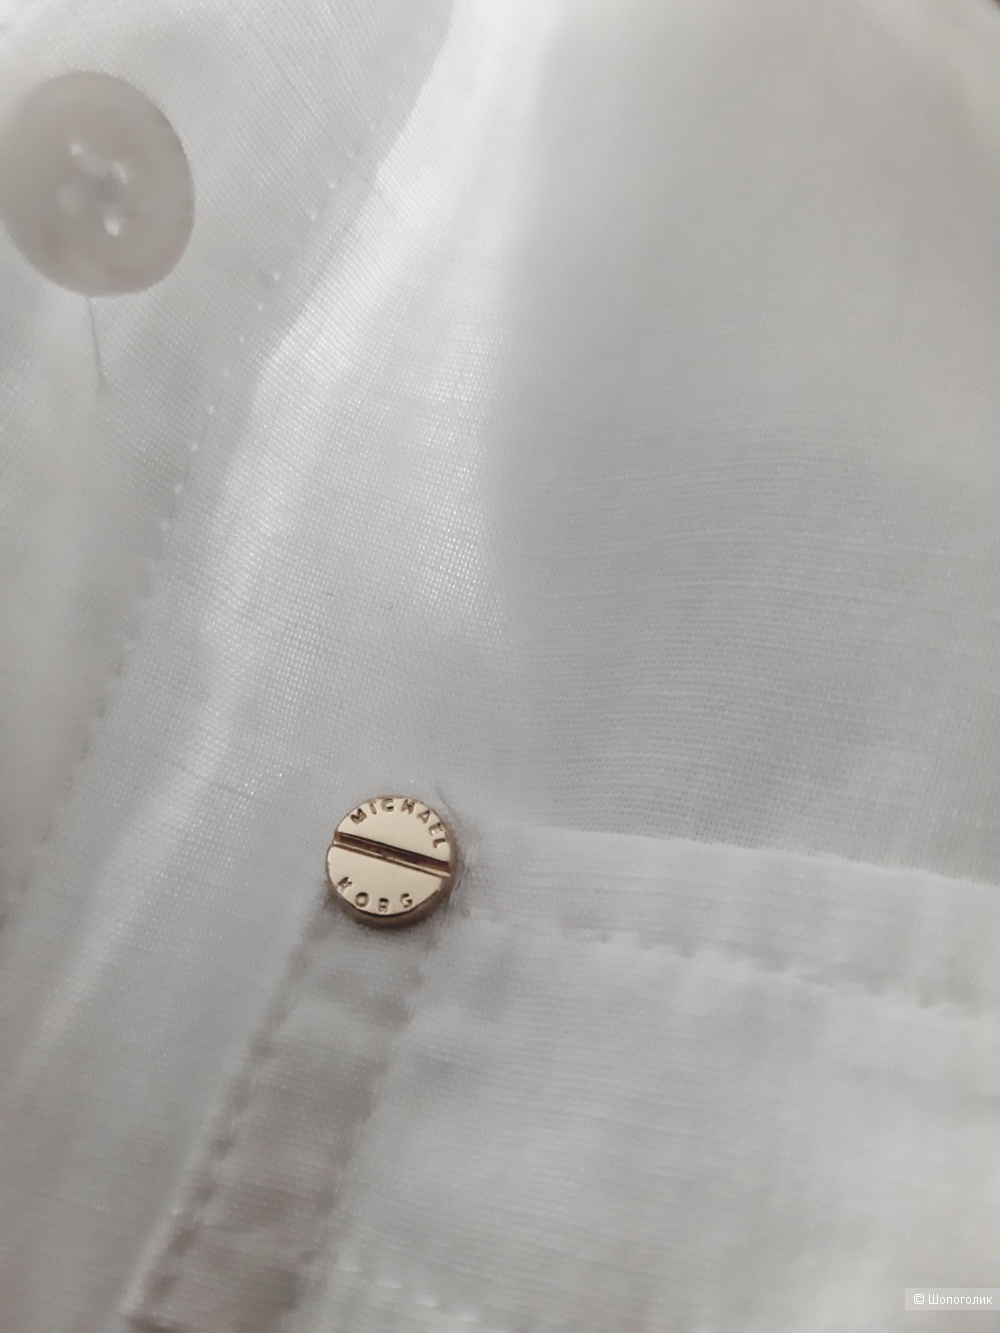 Рубашка  MICHAEL Michael Kors, размер XS,S